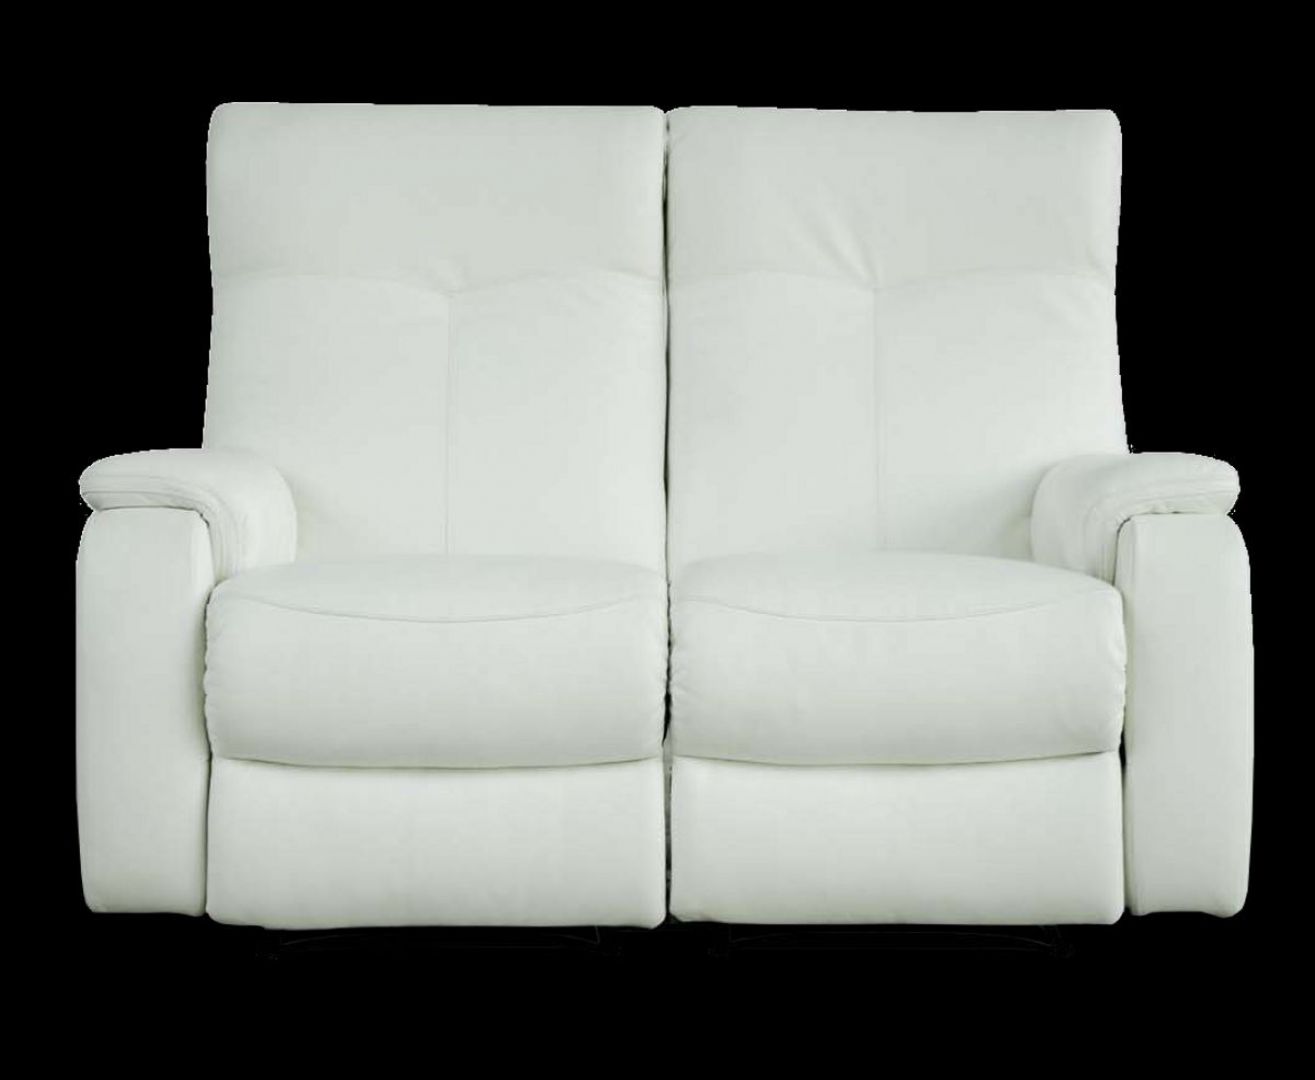 Pasodoble podwójny fotel z funkcją relax marki Vinotti
Fot. Vinotti